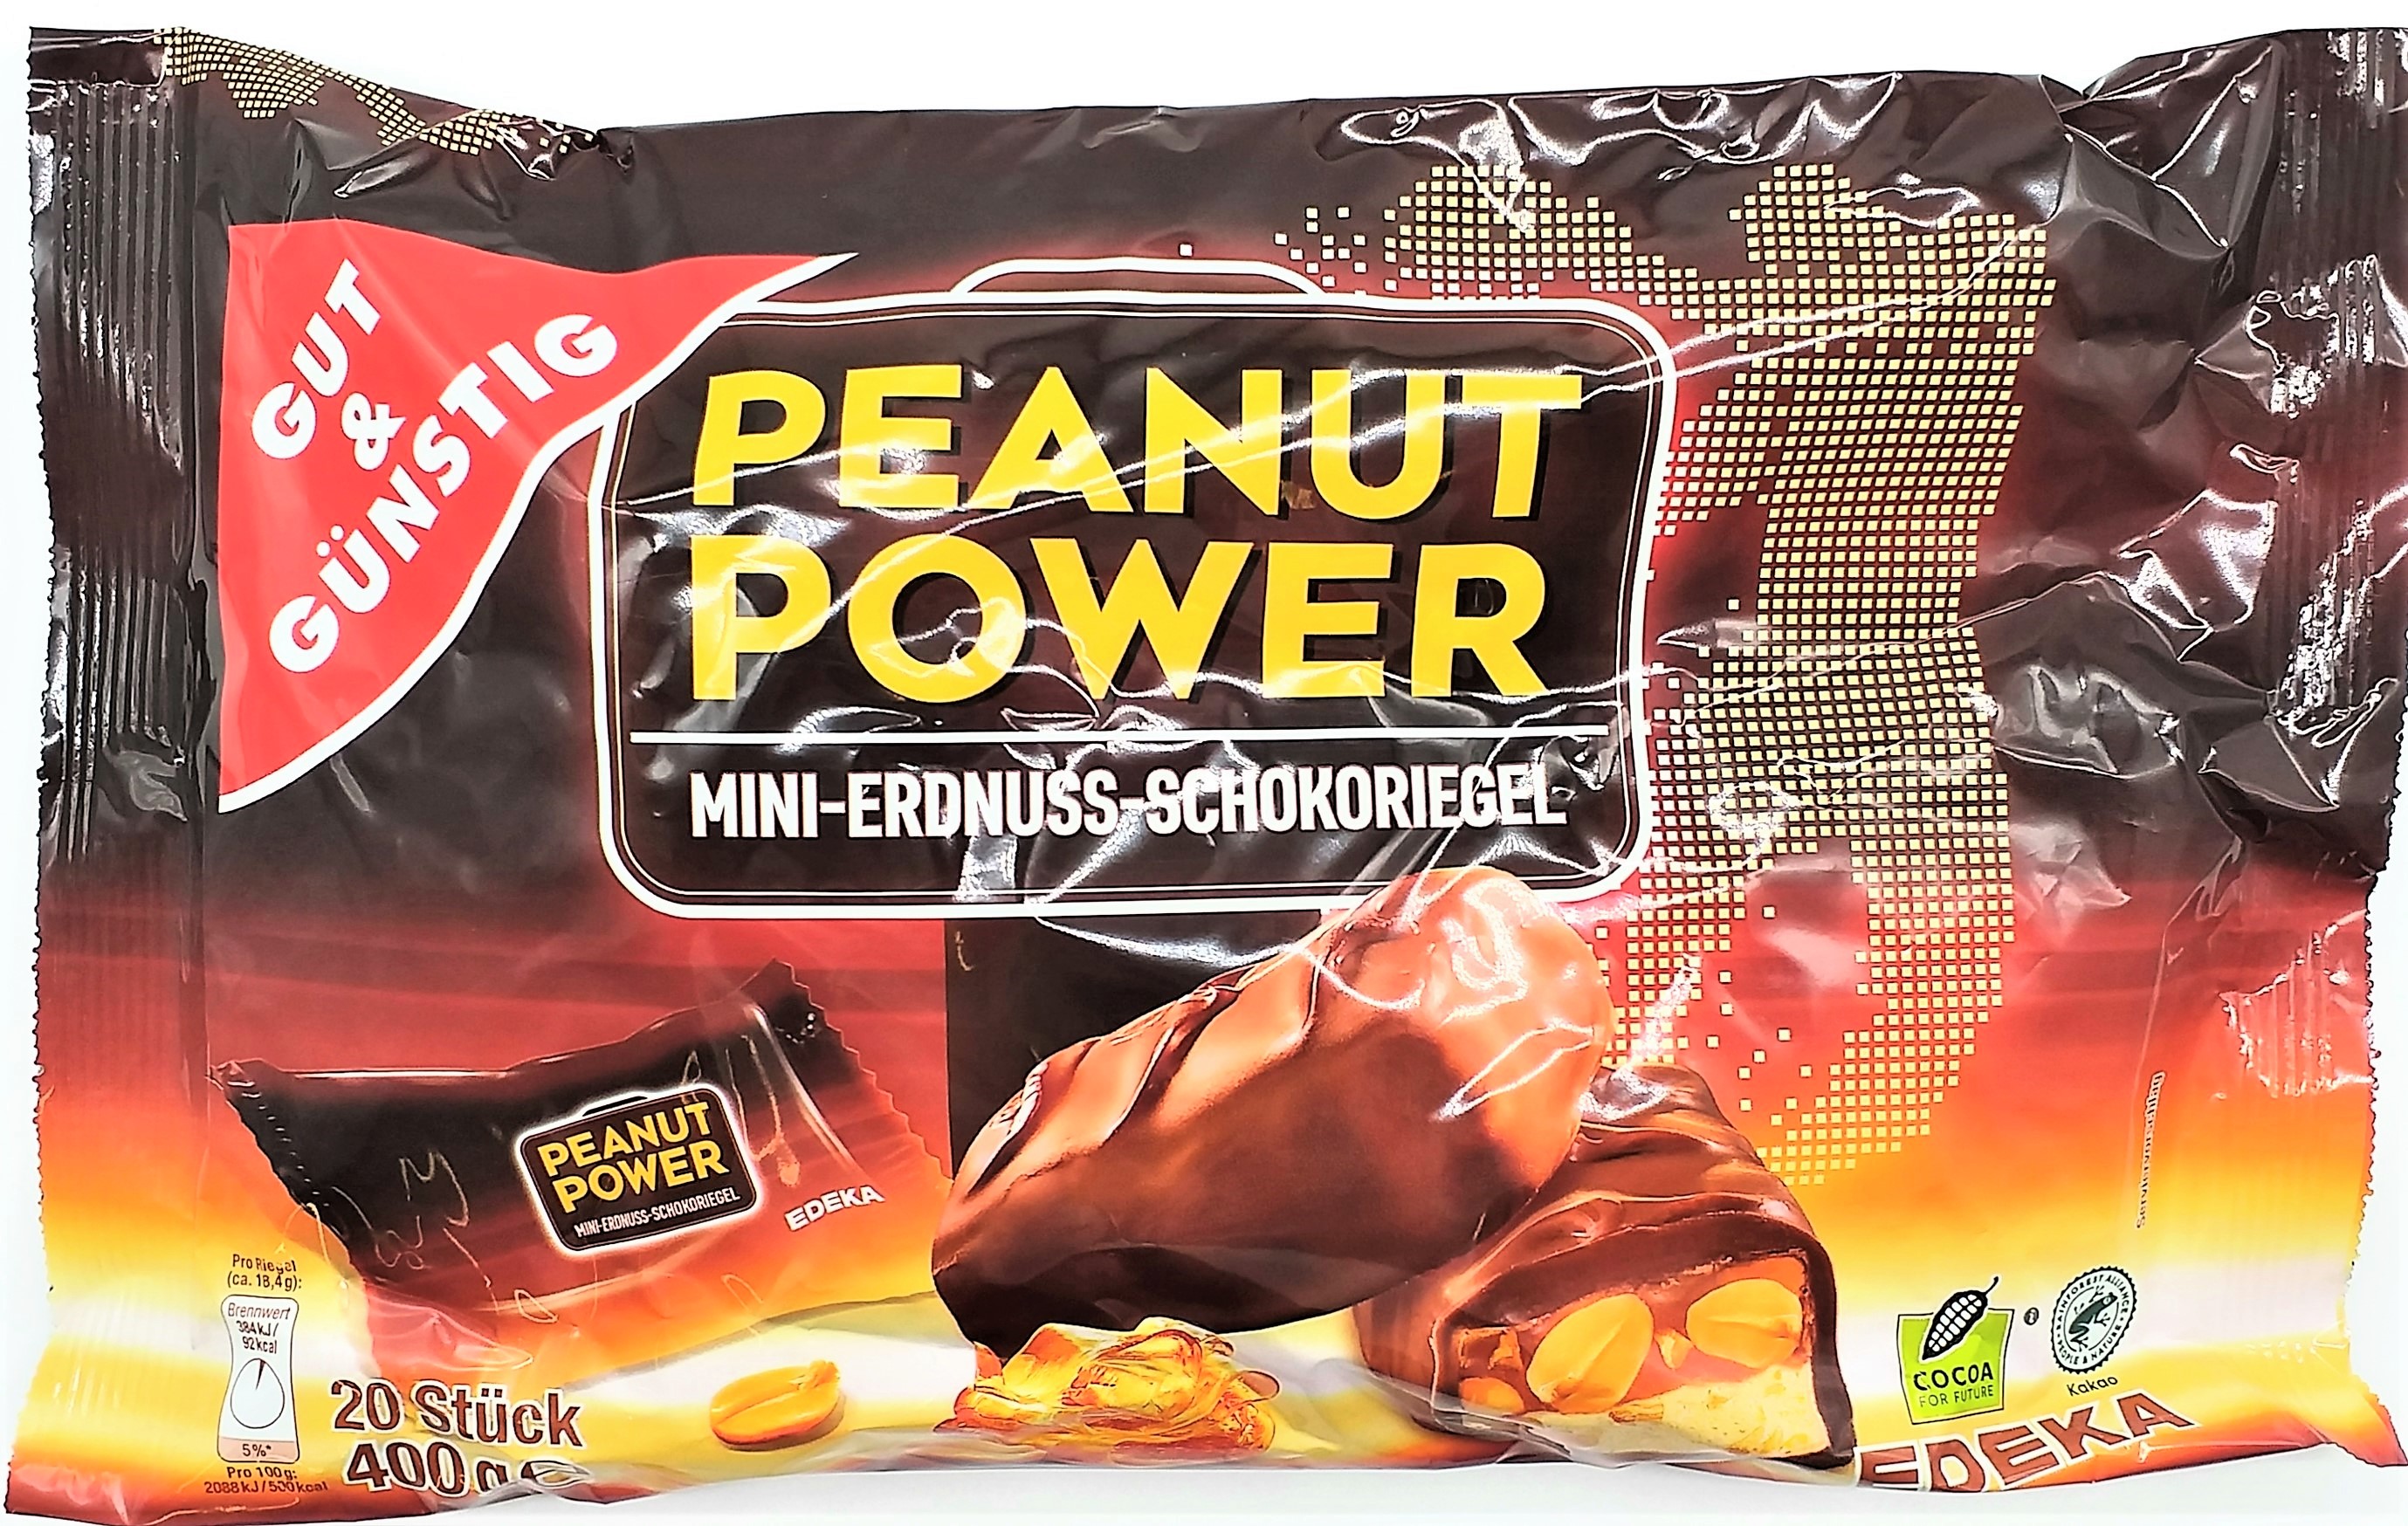 G&G Peanut Power Schokoriegel Erdn.400g